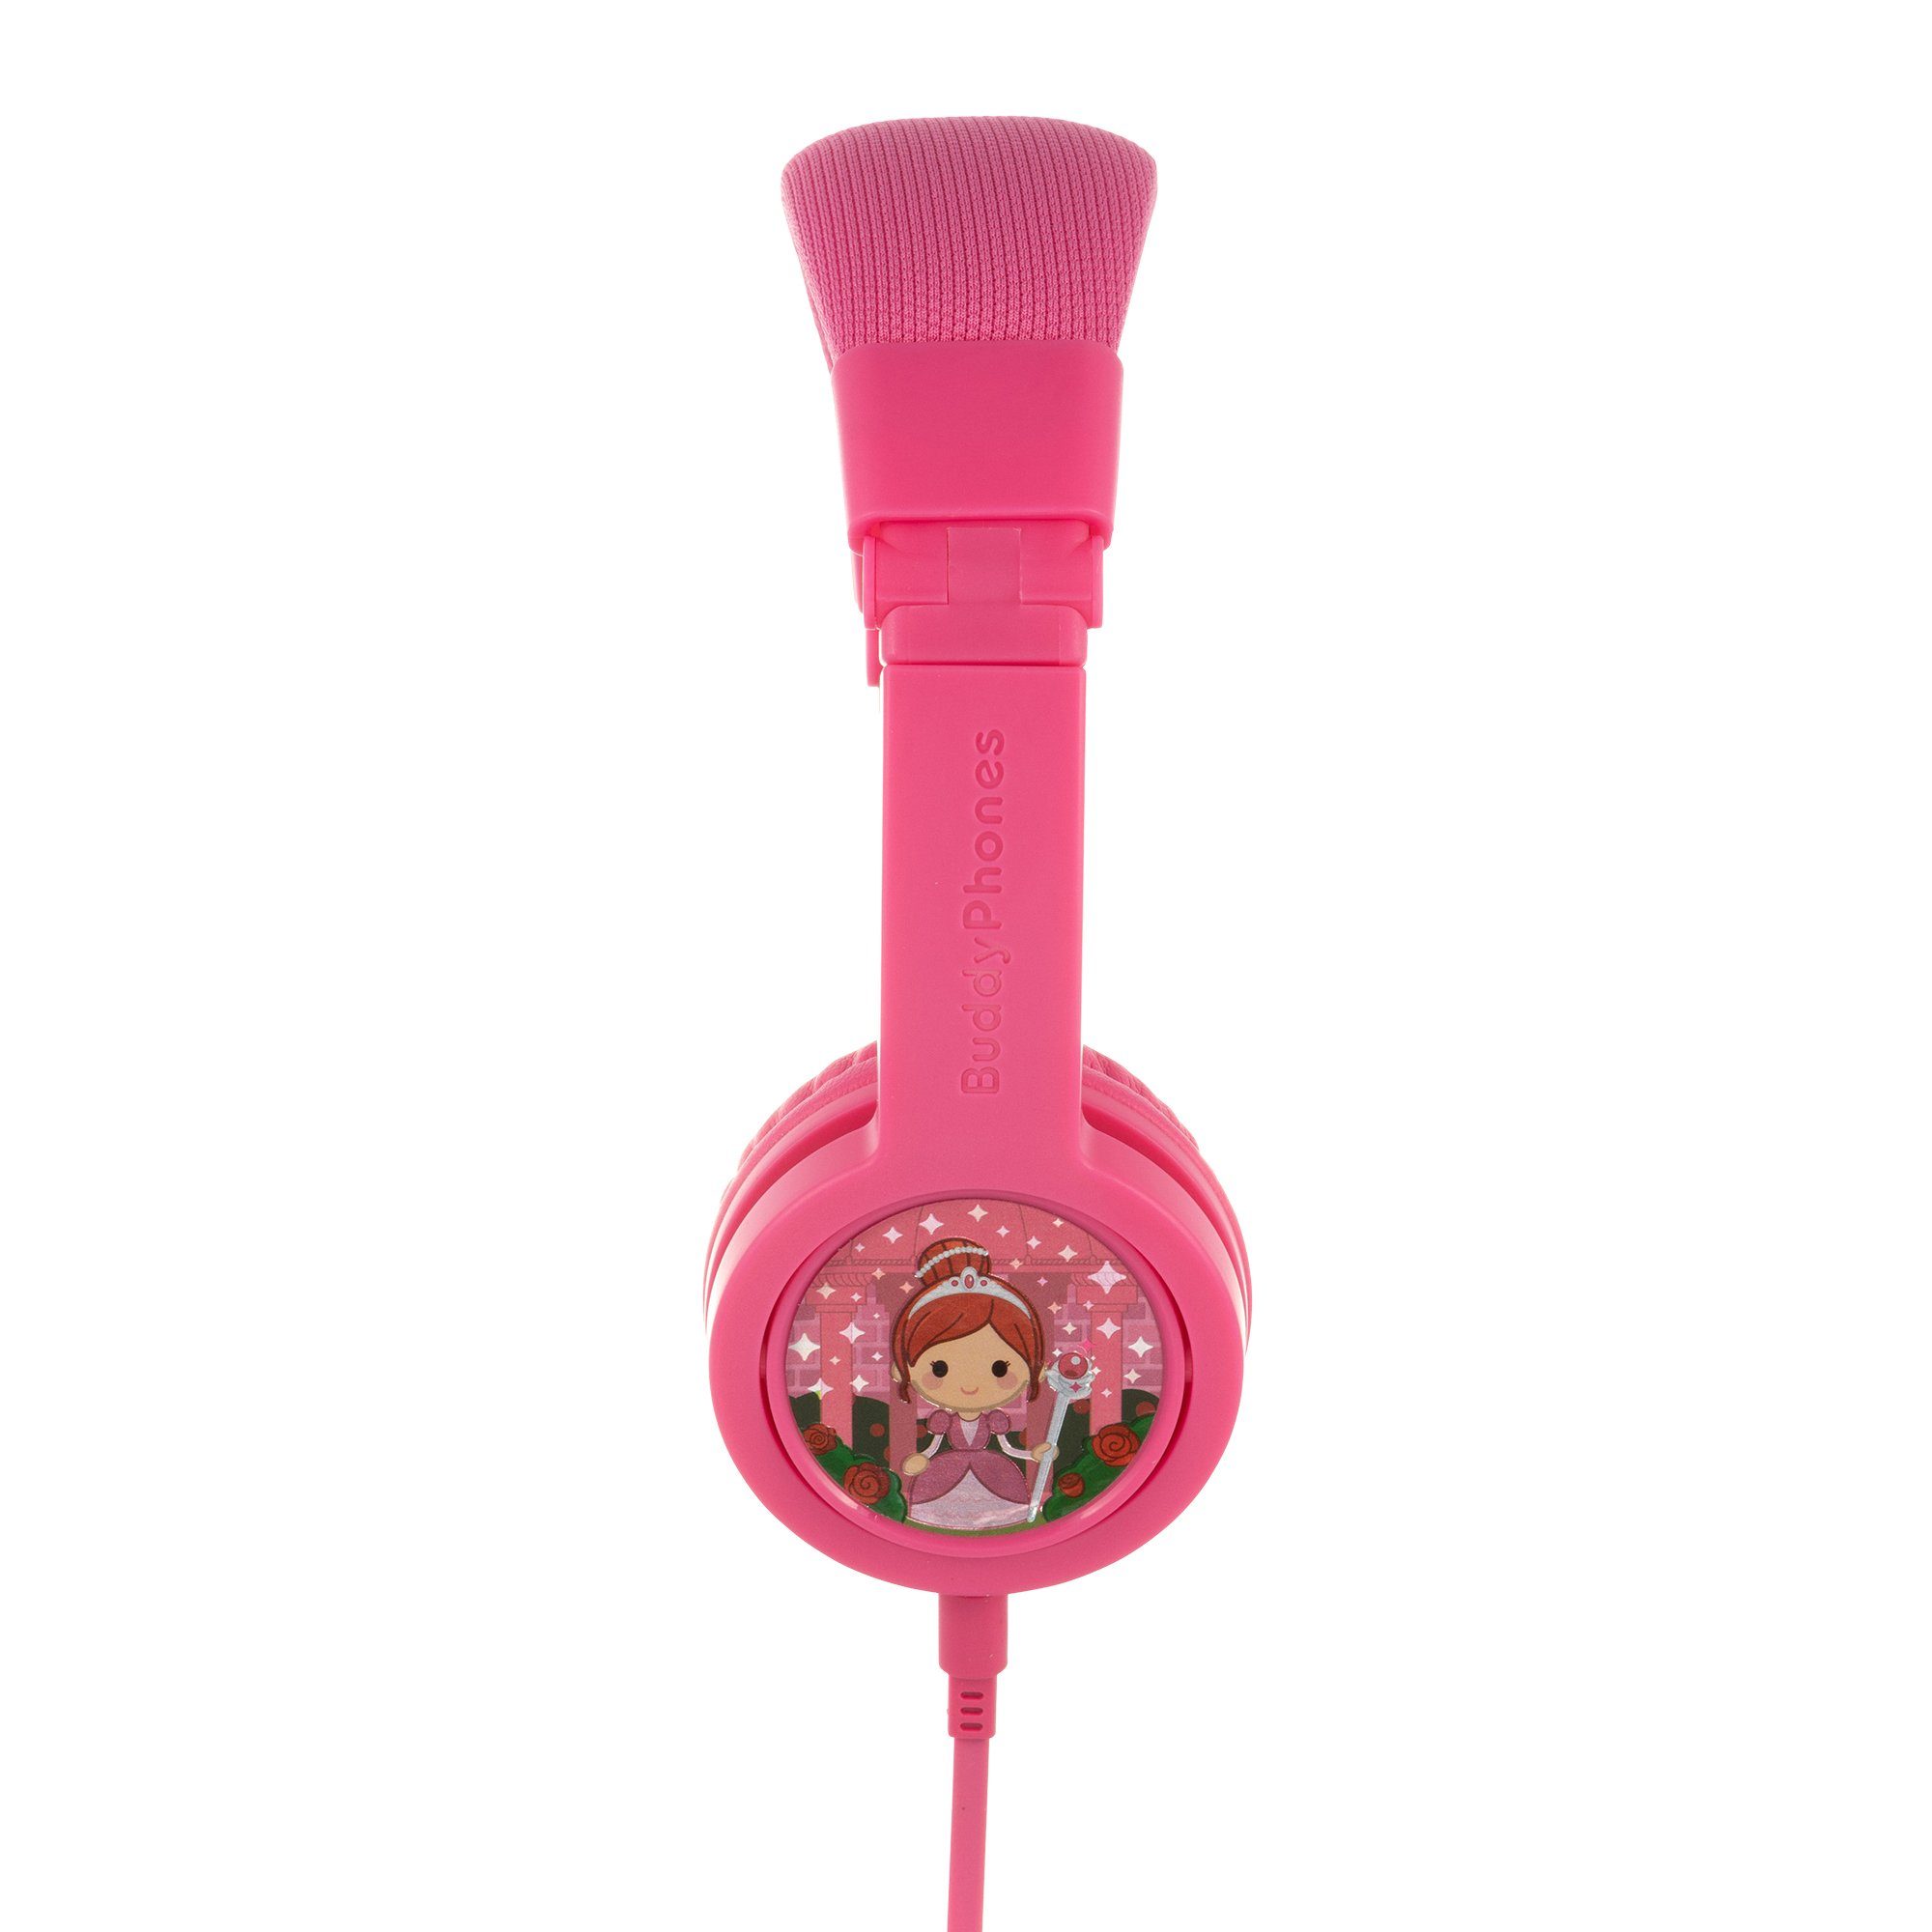 inkl. die buddyphones™ BuddyPhones integriertes extrem Kabel Produkte Kopfbügel, Kopfbügel, abnehmbar, verstellbarer Kinder-Kopfhörer onanoff Explore+ (kindersicher, klappbar, Reisetasche, coole sicheren hypoallergen) - strapazierfähig, gepolsterter dabei, Kinderkopfhörer Lautstärkebegrenzung, Sticker pink kinderfreundlich, safeAudio, Mikrofon,